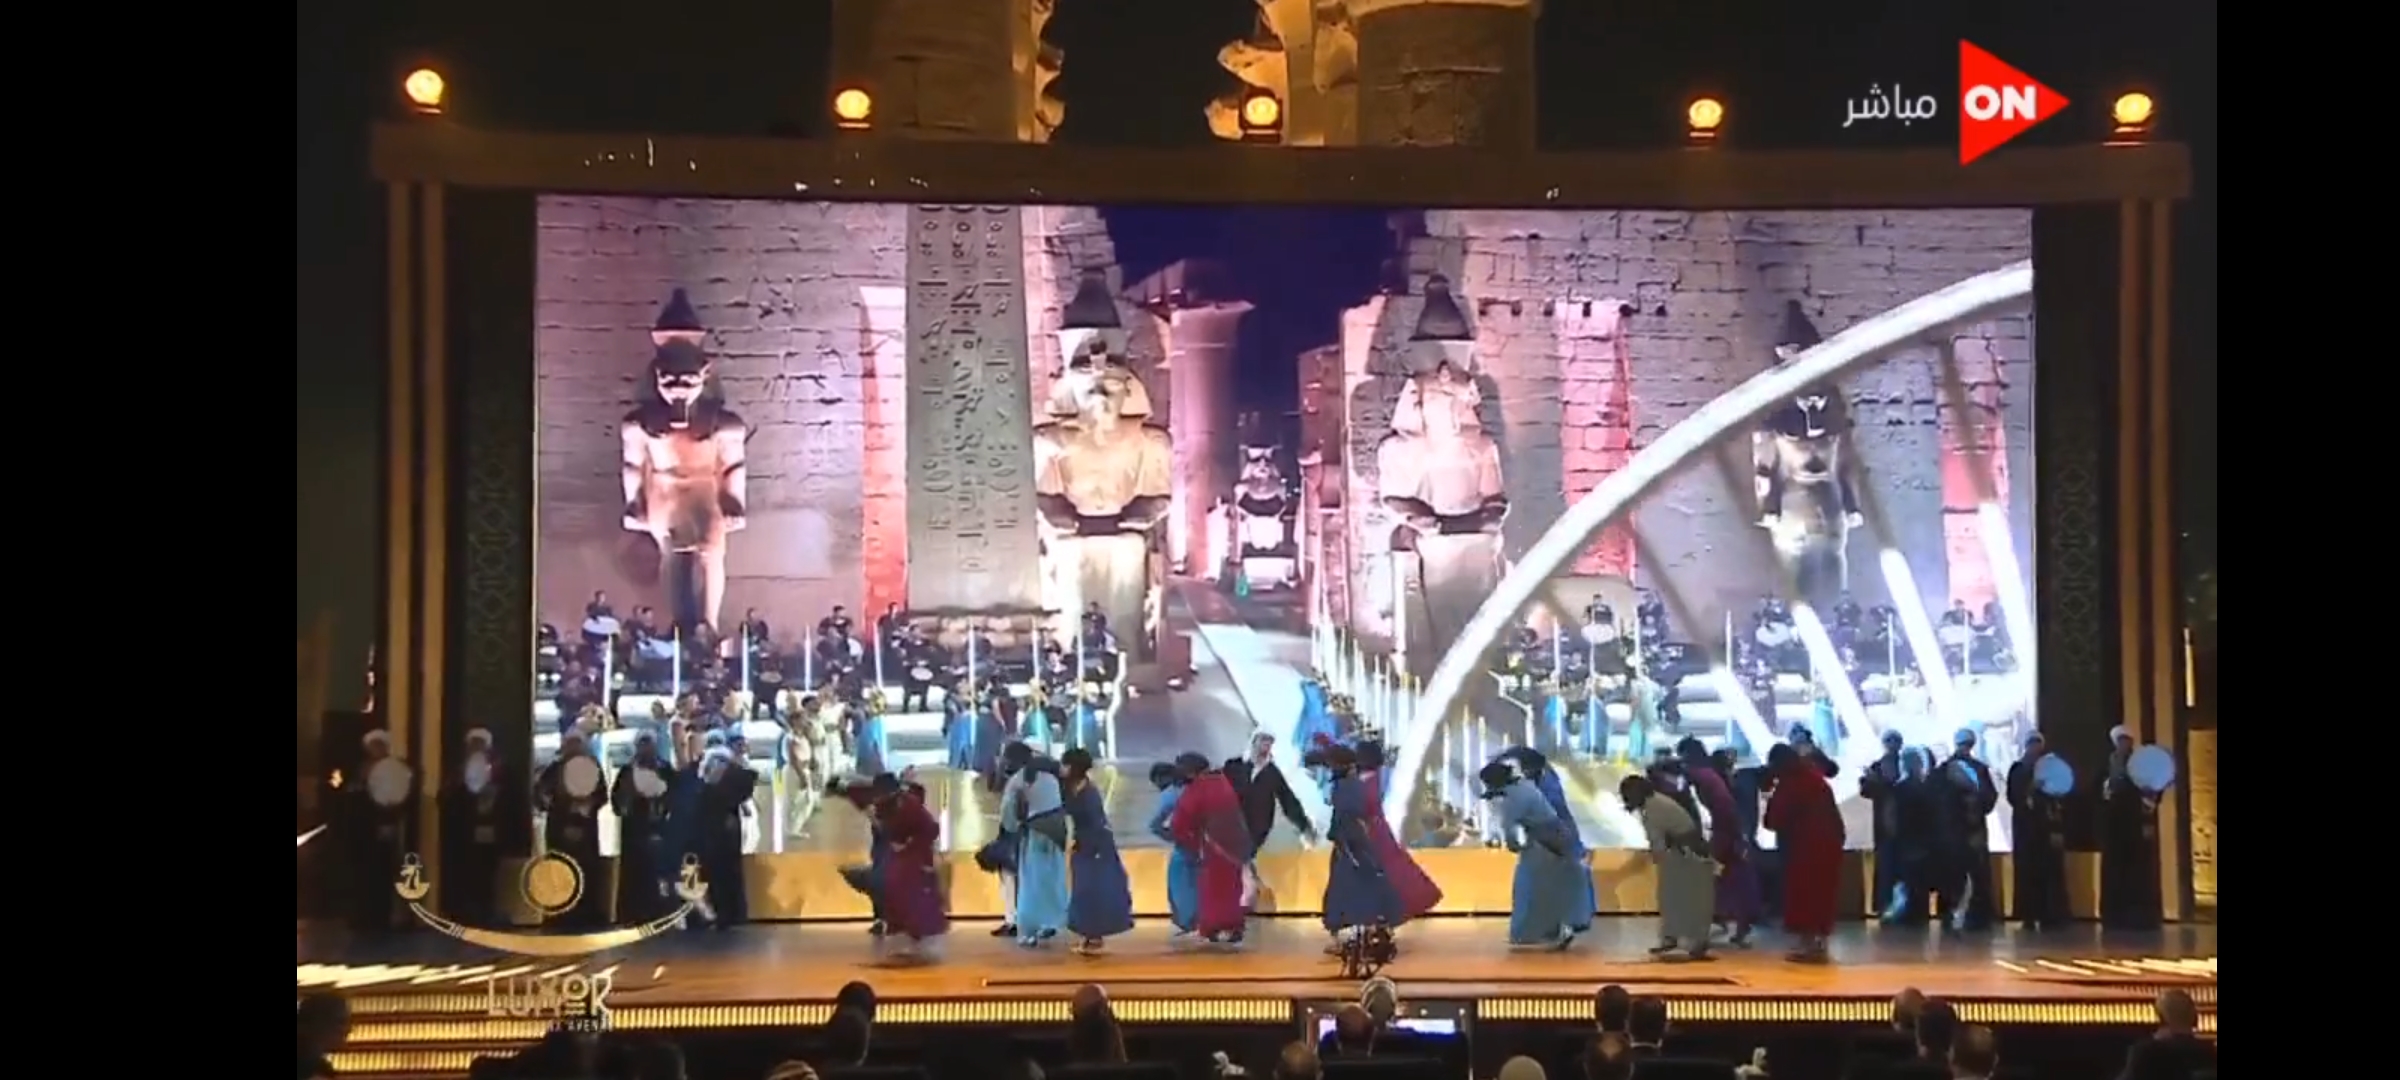 افتتاح طريق الكباش| وائل الفشني يحيي الاحتفالية بـ أغنية "الأقصر بلدنا" 3